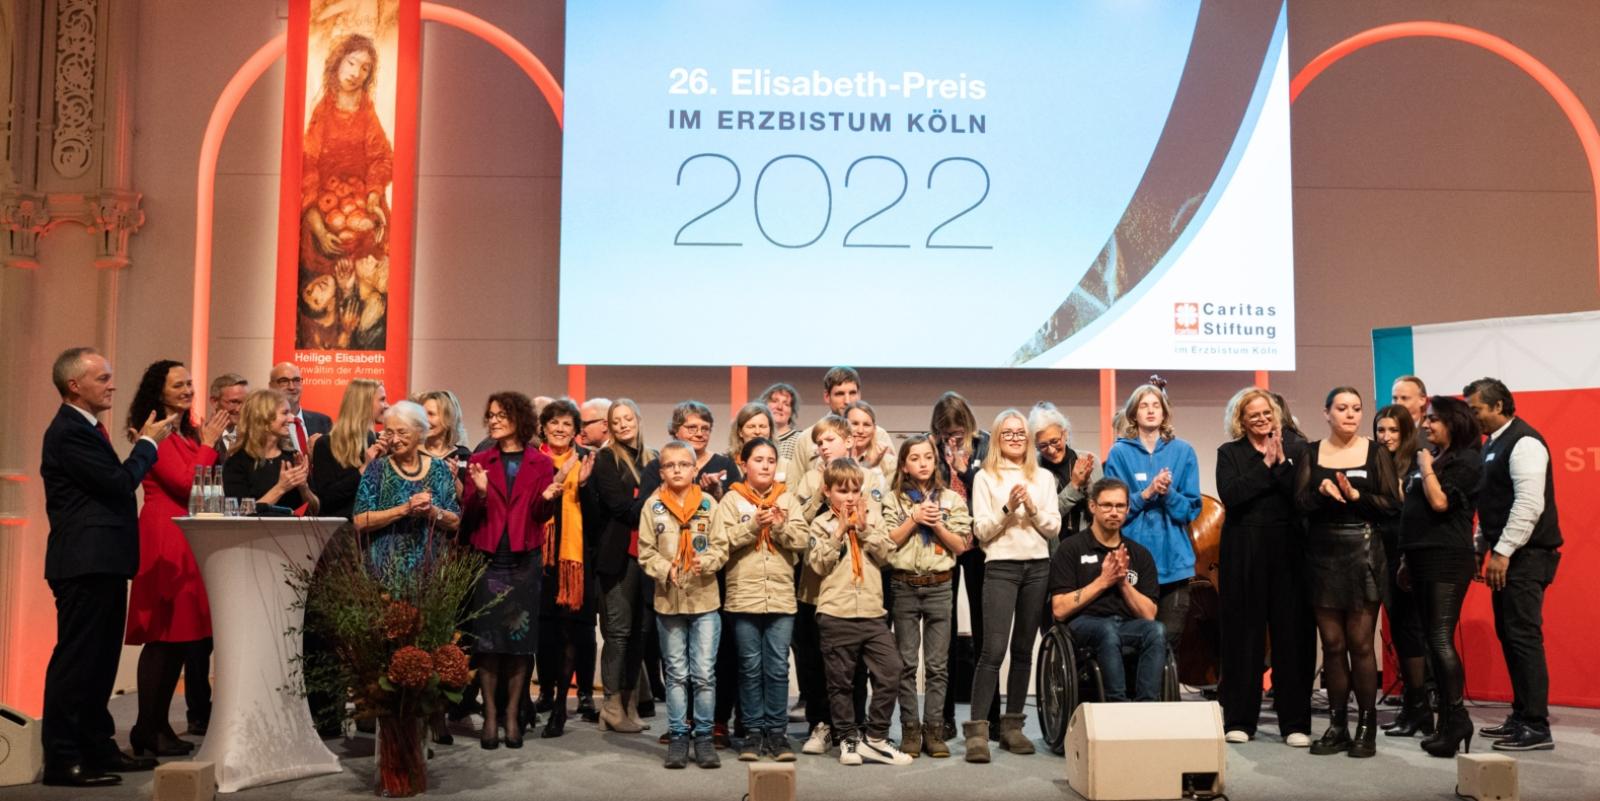 Elisabethpreis 2022: Gruppenfoto